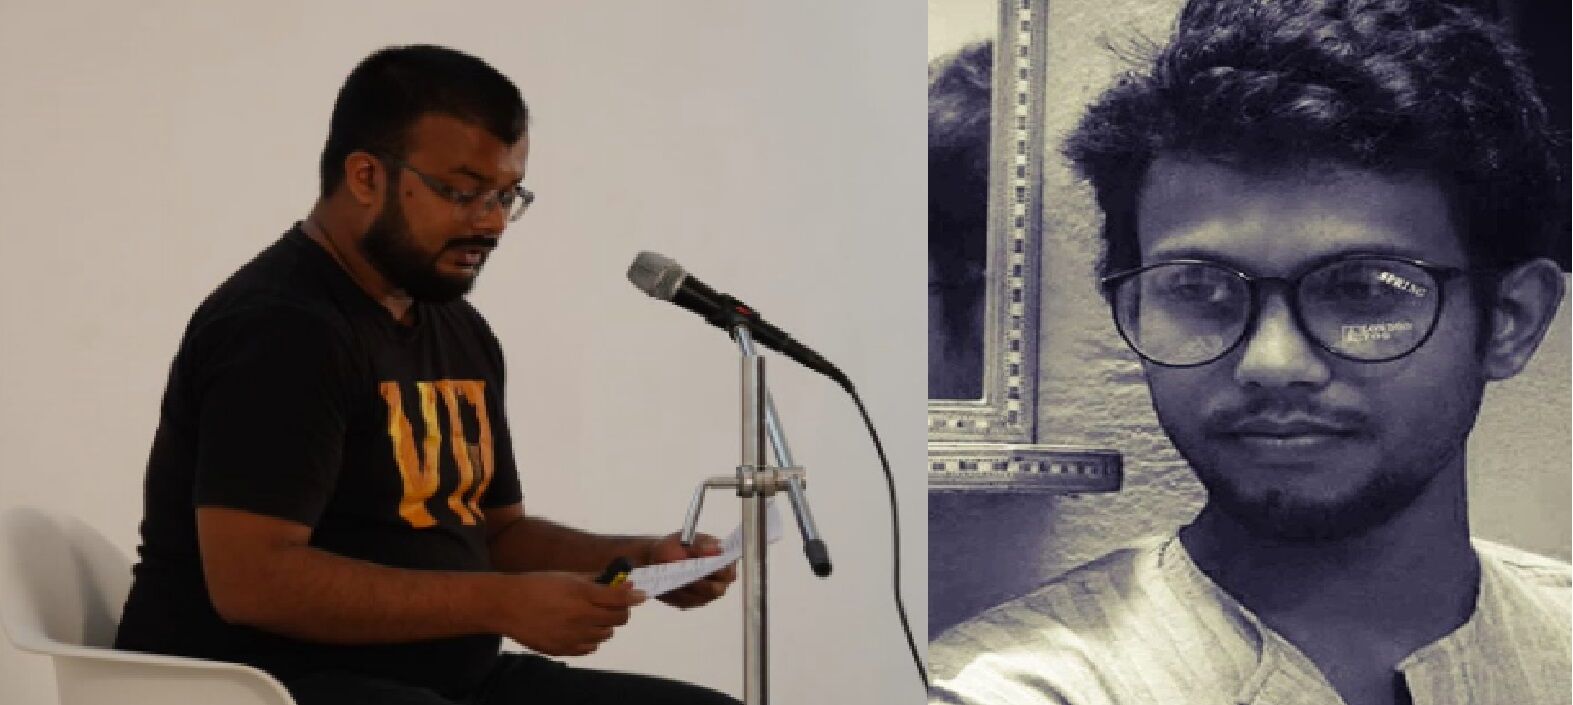 कविता लिखने पर असम में 10 कवियों-कार्यकर्ताओं पर मुकदमा दर्ज